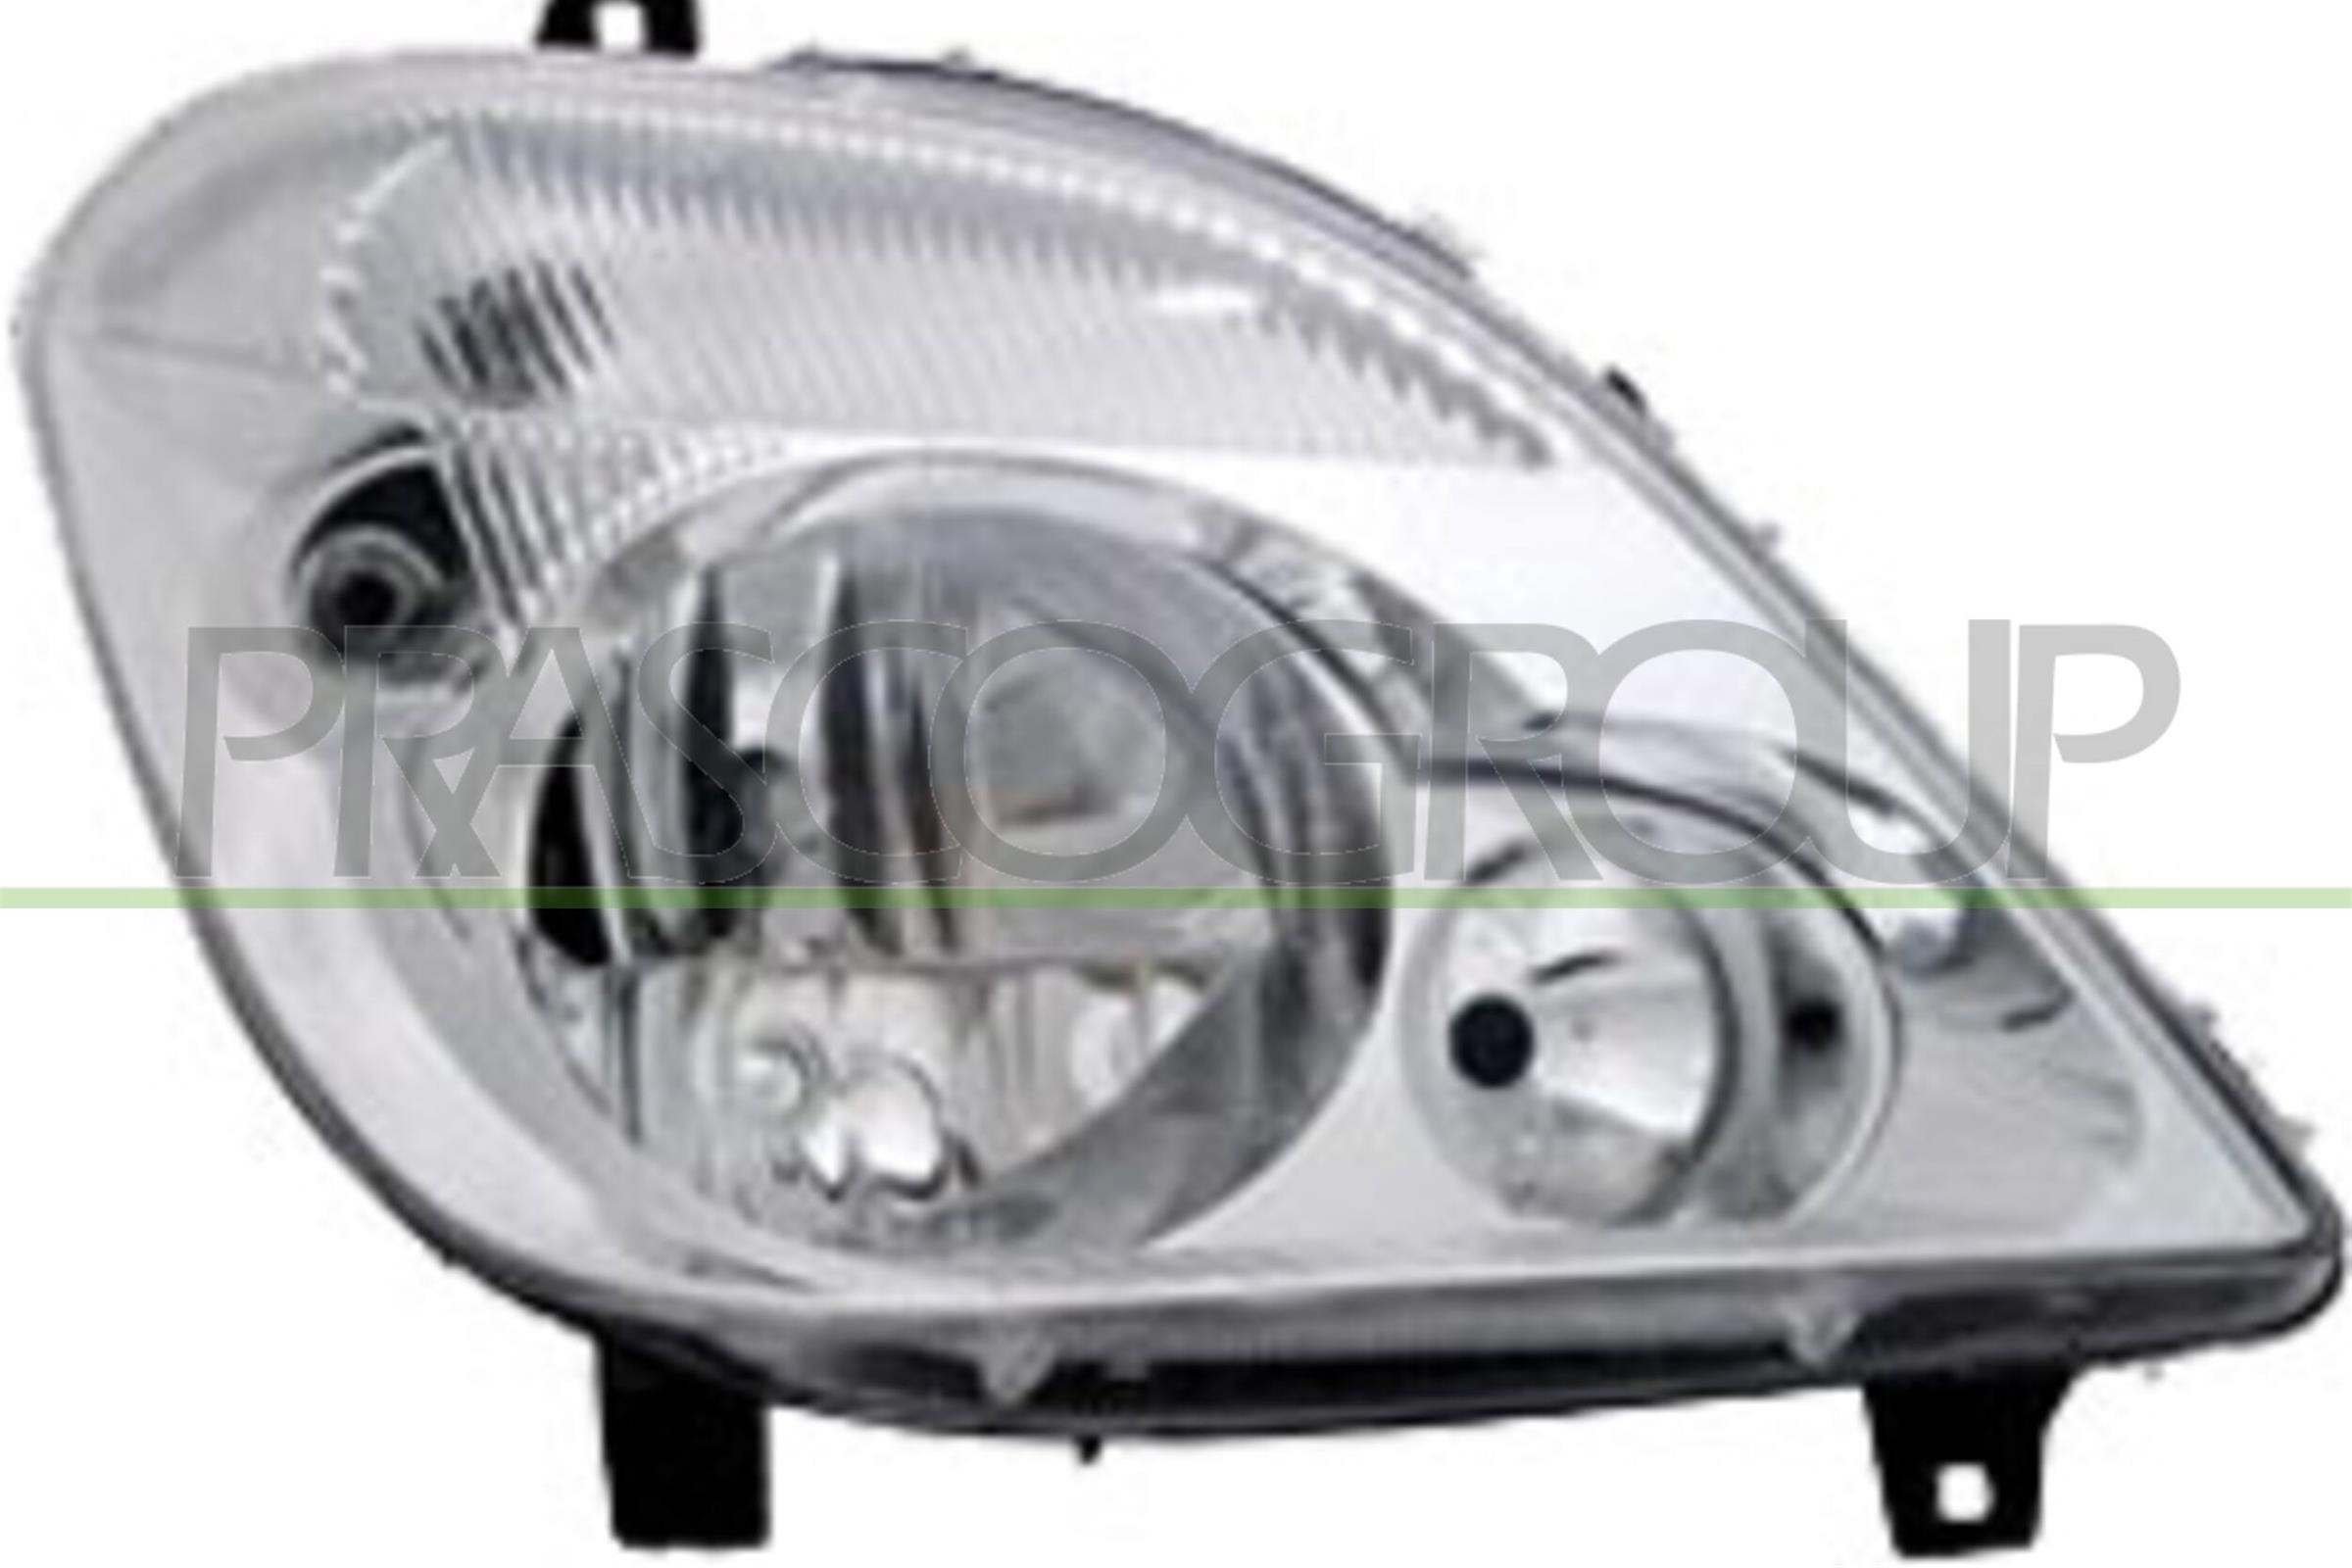 Great value for money - PRASCO Headlight ME9194903